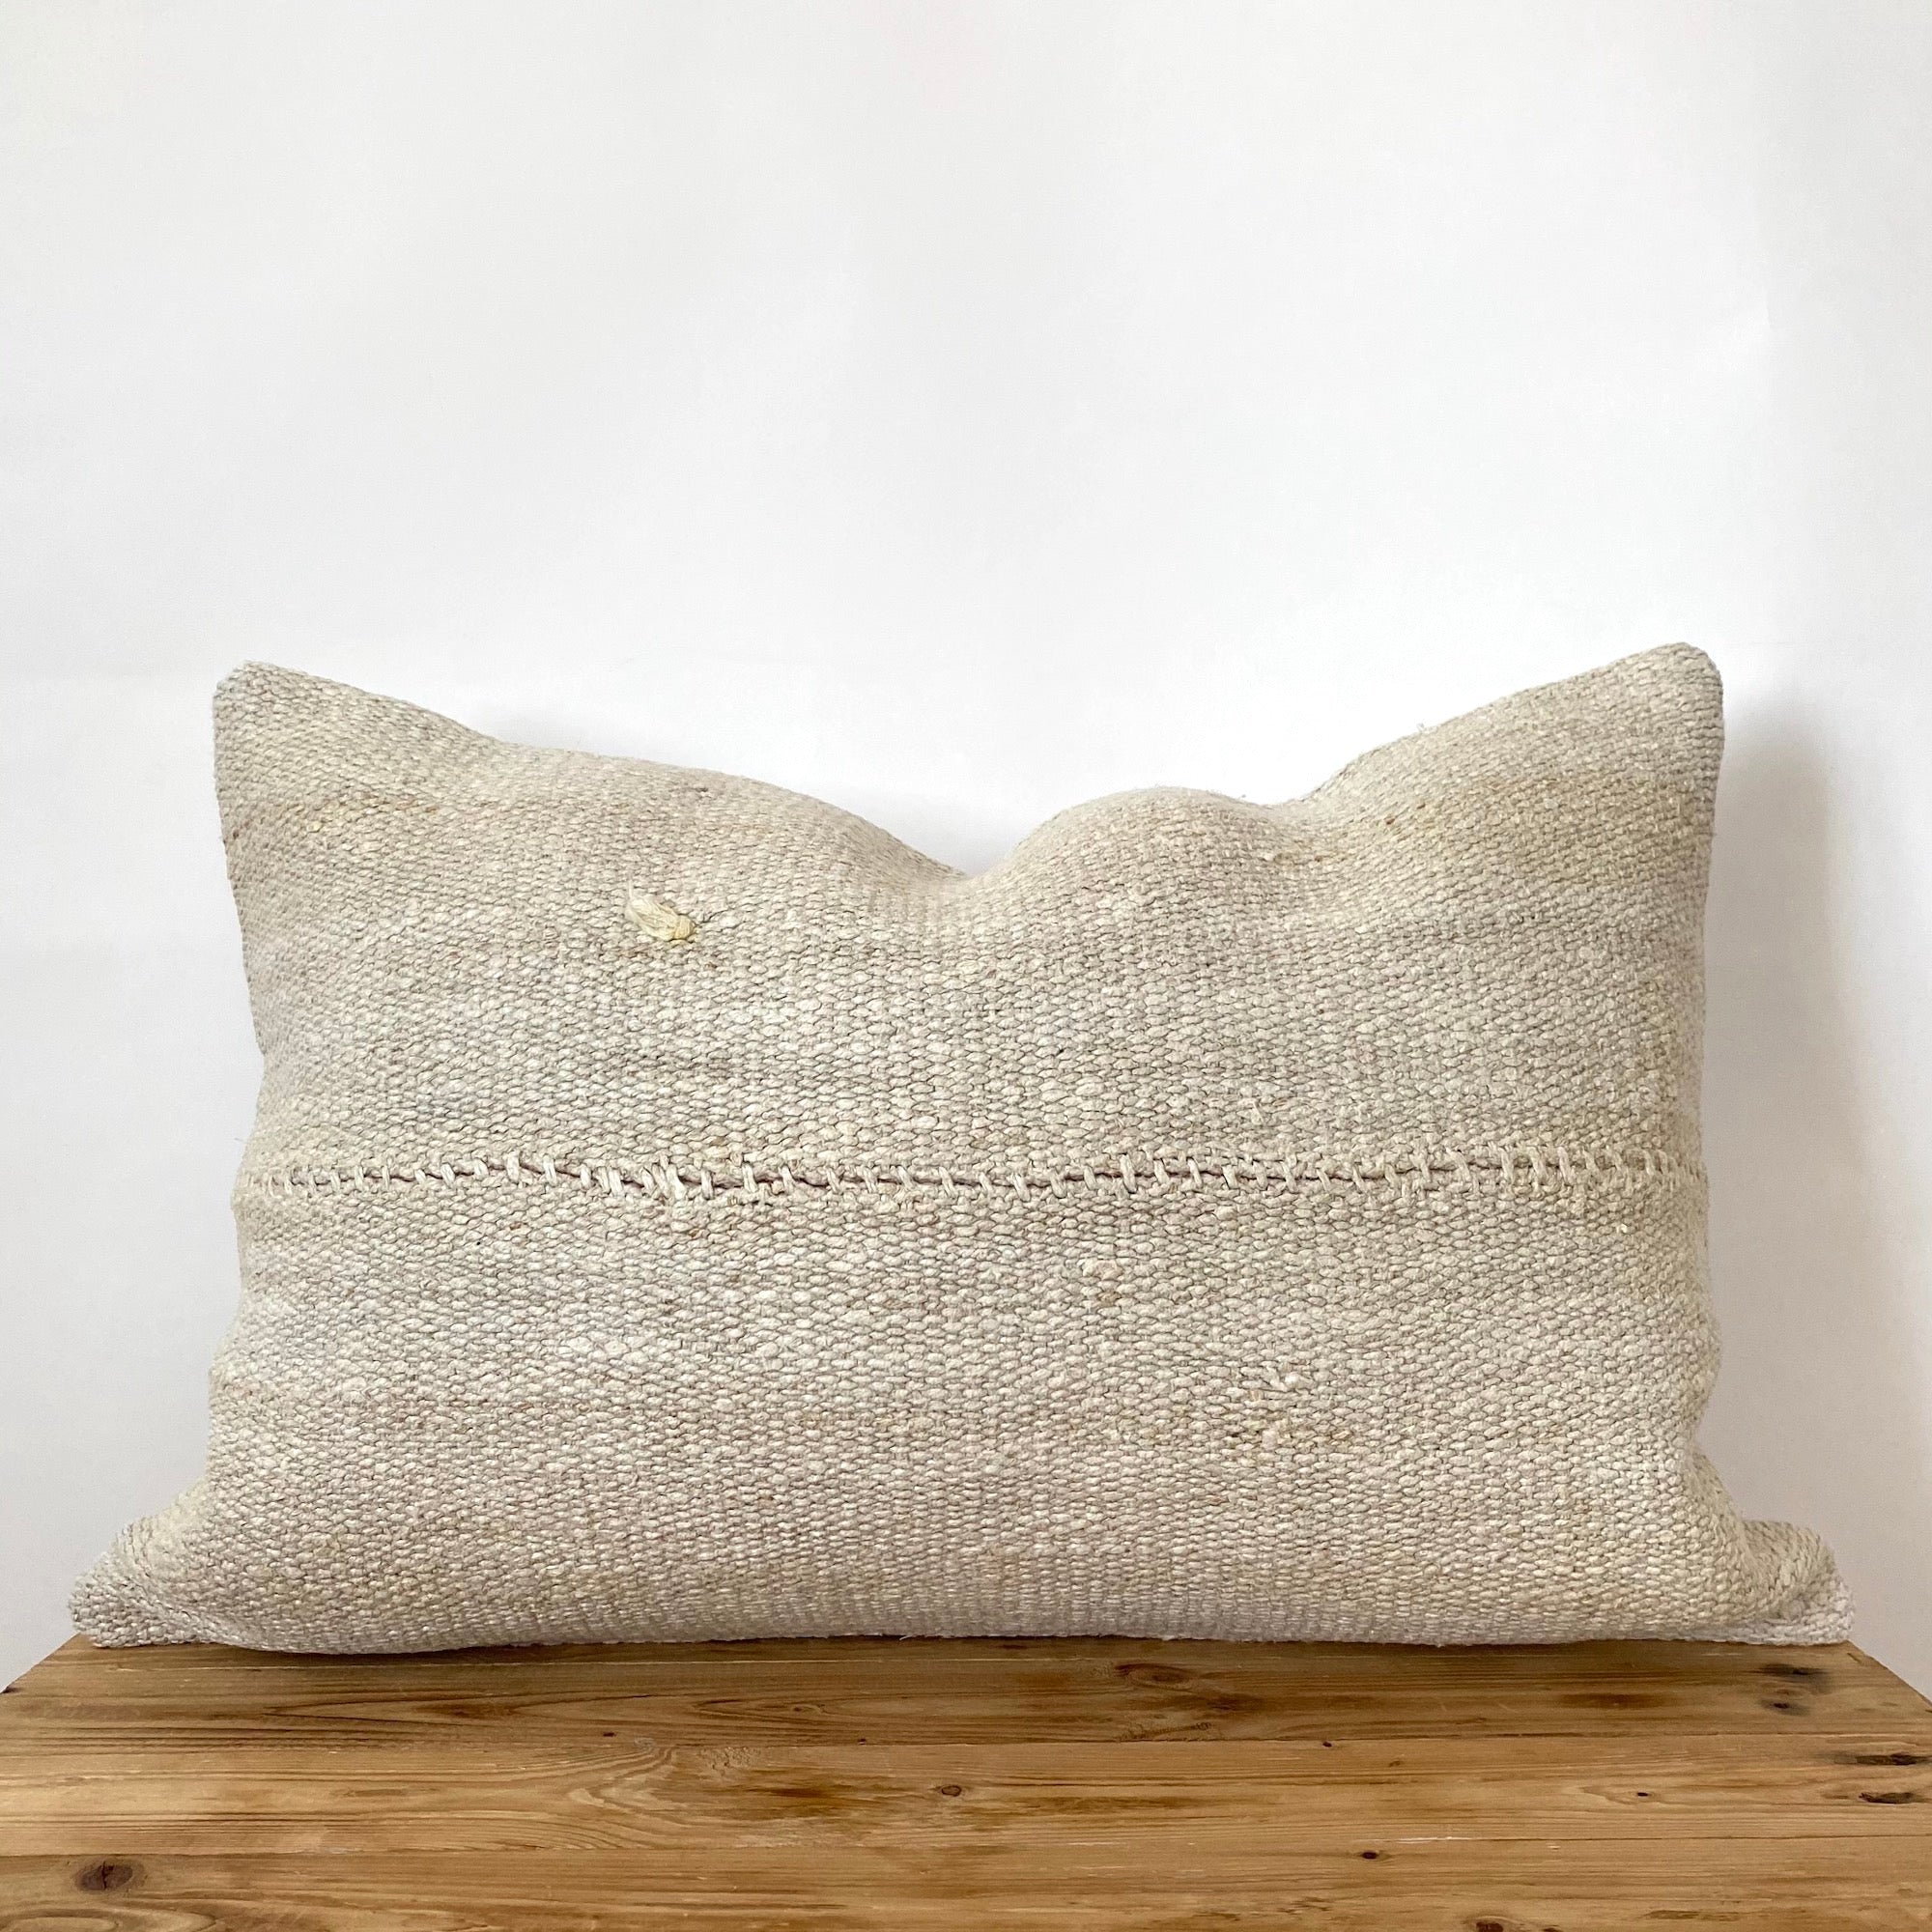 Fleurettah - Beige Hemp Pillow Cover - kudenrugs